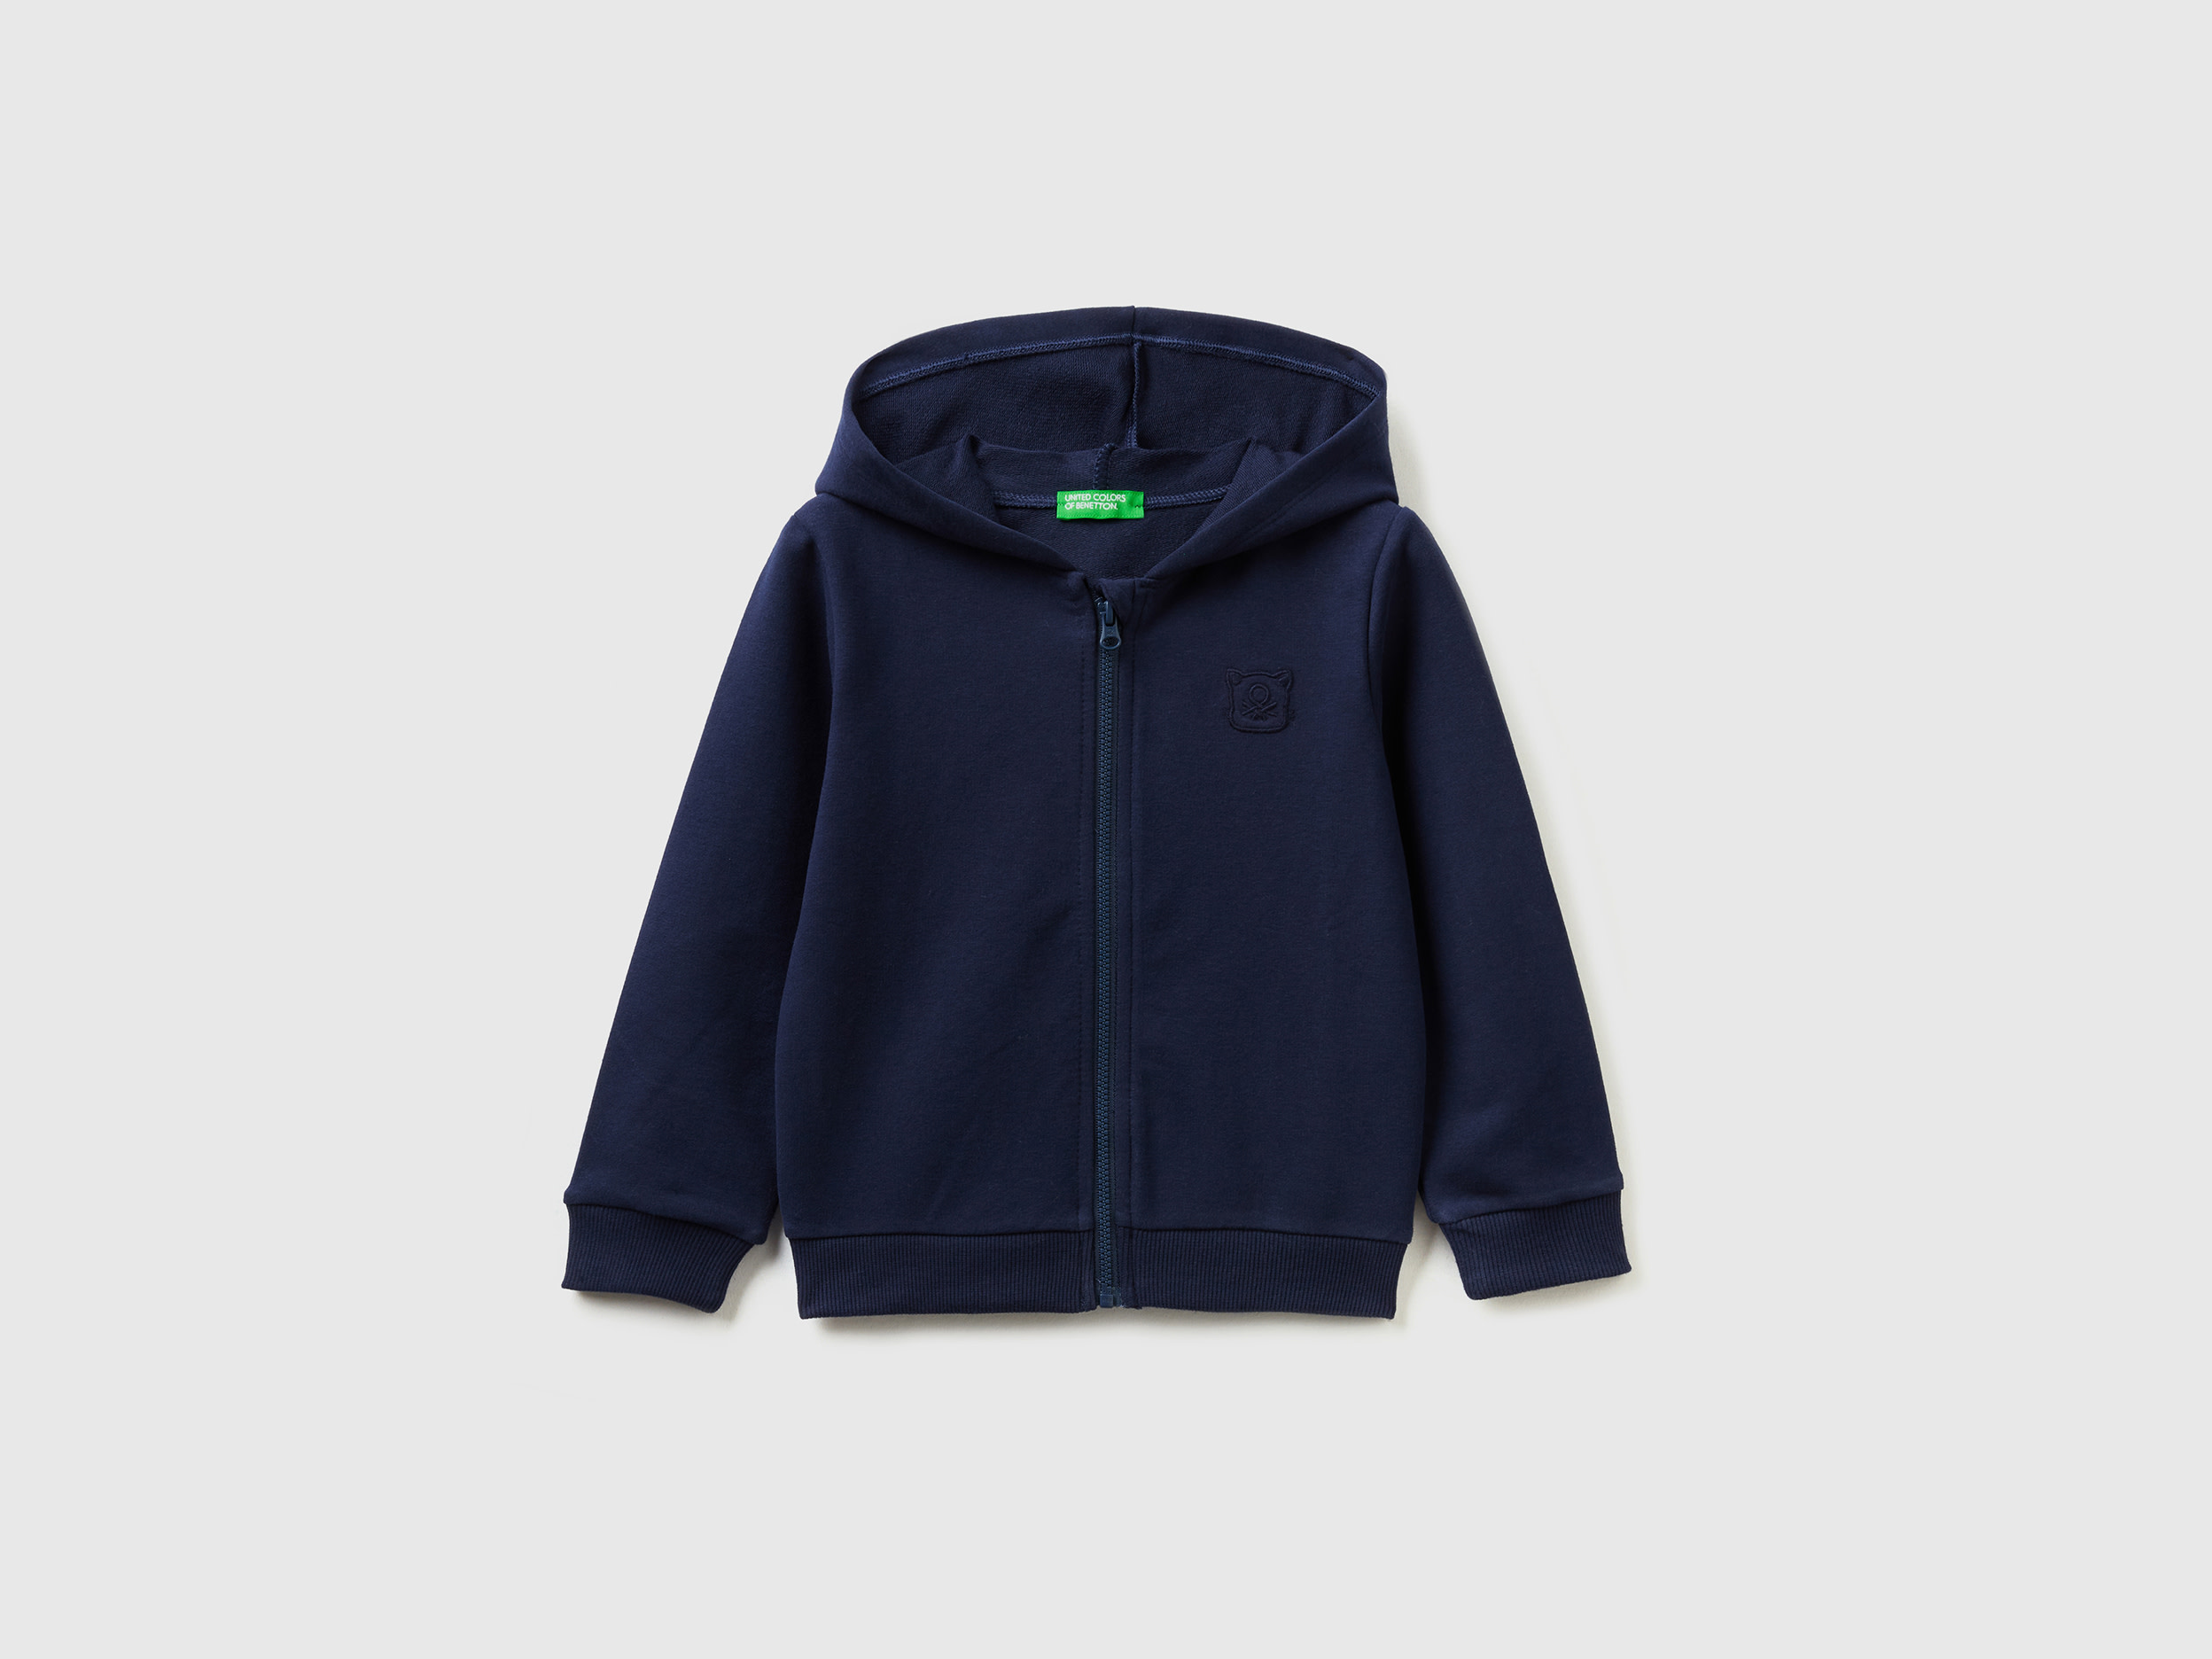 Benetton, Warm Sweatshirt With Zip And Embroidered Logo, size 4-5, Dark Blue, Kids